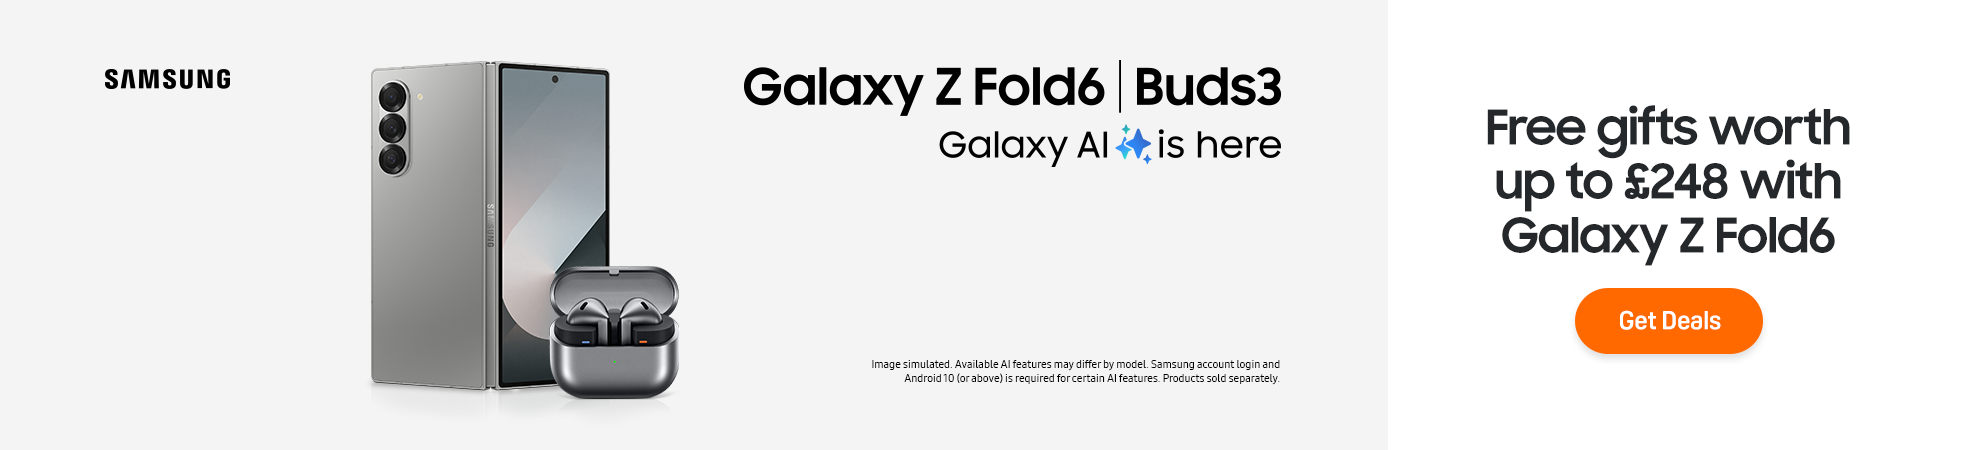 Galaxy Z Fold6 and Buds3